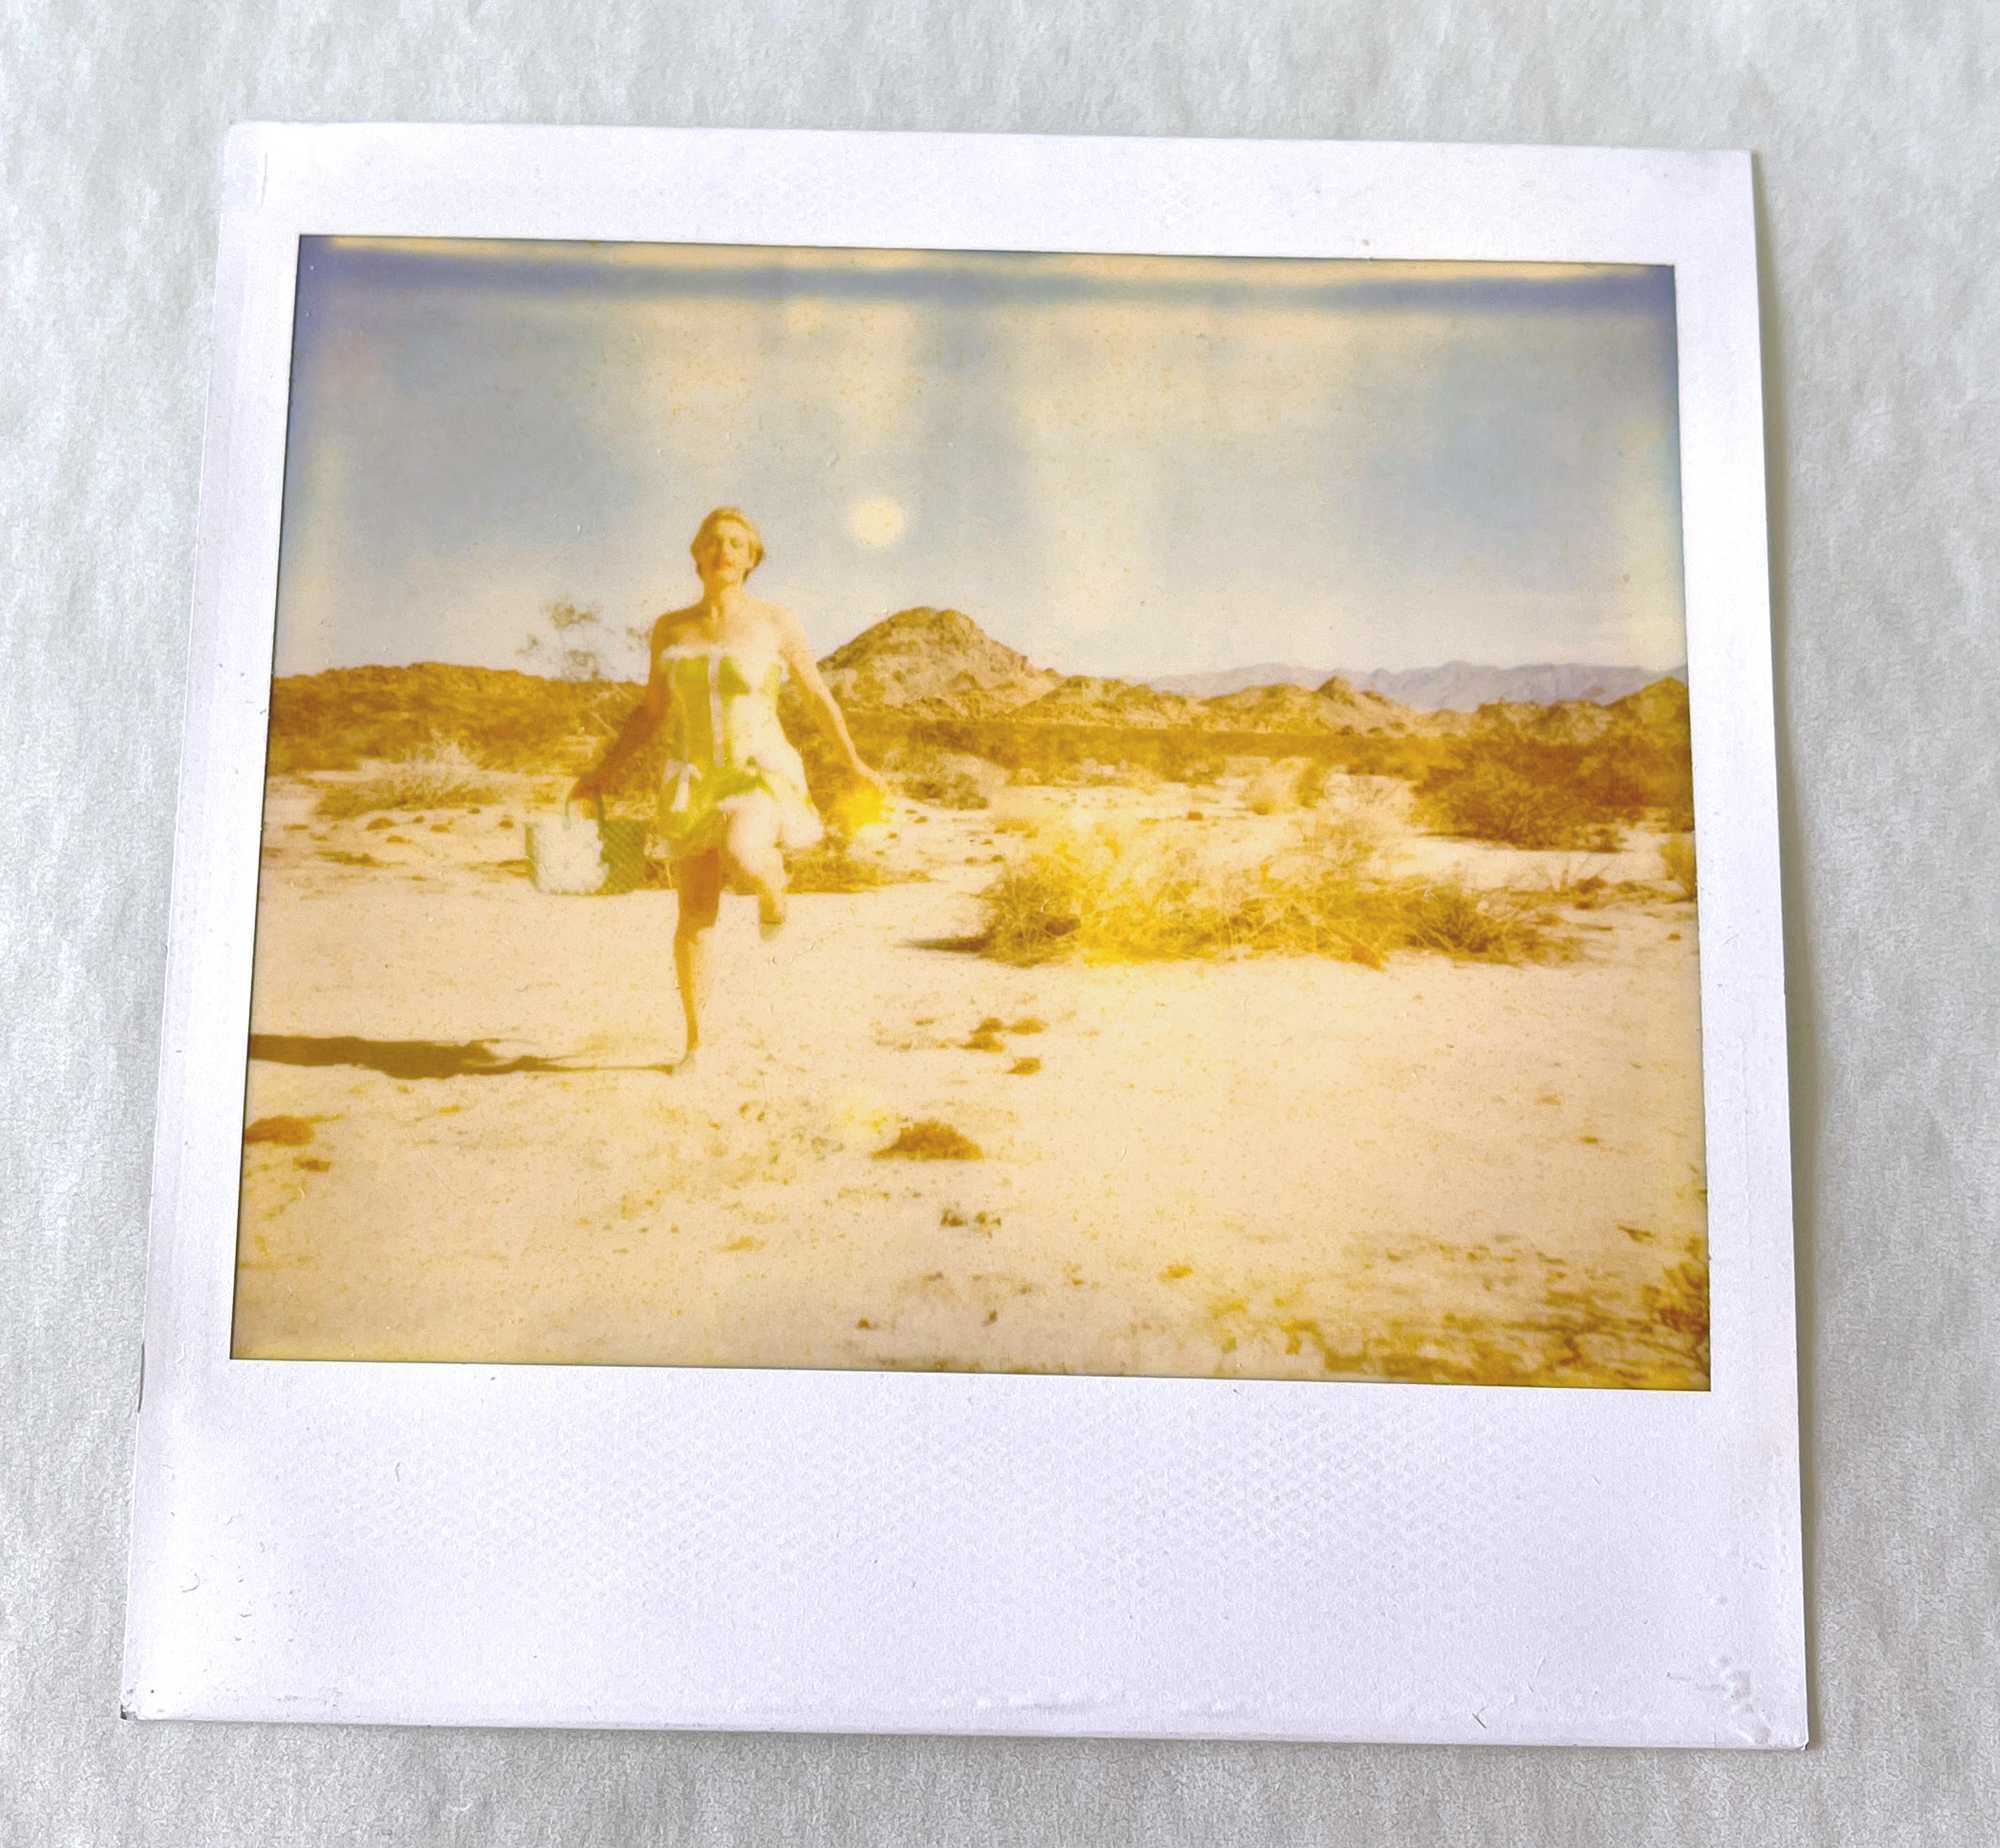 The Sound of Music (29 Palms, CA) - Original Polaroid Unique Piece - Contemporary Photograph by Stefanie Schneider